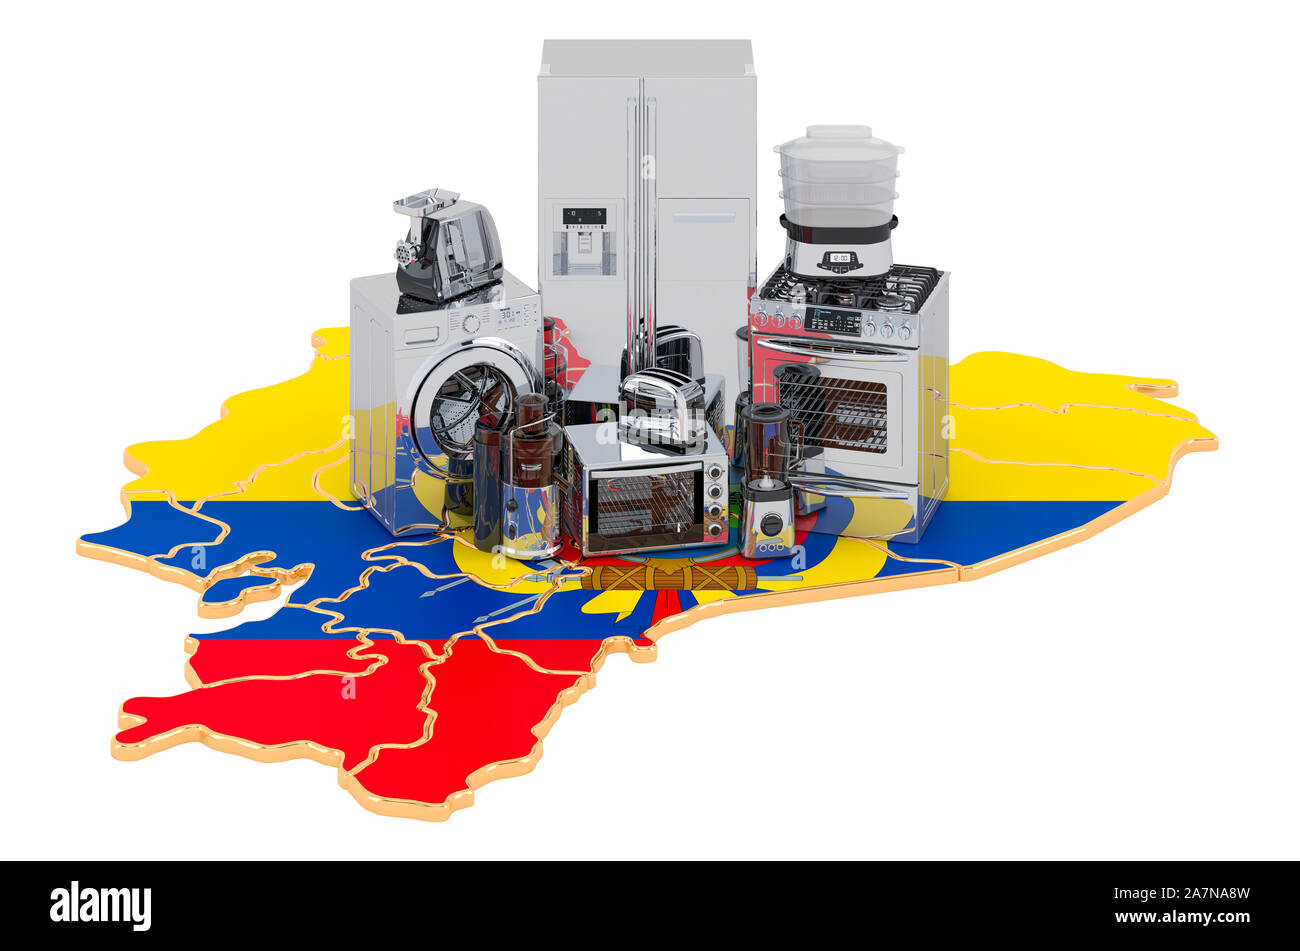 Küche und Hausgeräte auf der Karte von Ecuador. Produktions-, Einkaufs- und Lieferbedingungen Konzept. 3D-Rendering auf weißem Hintergrund Stockfoto